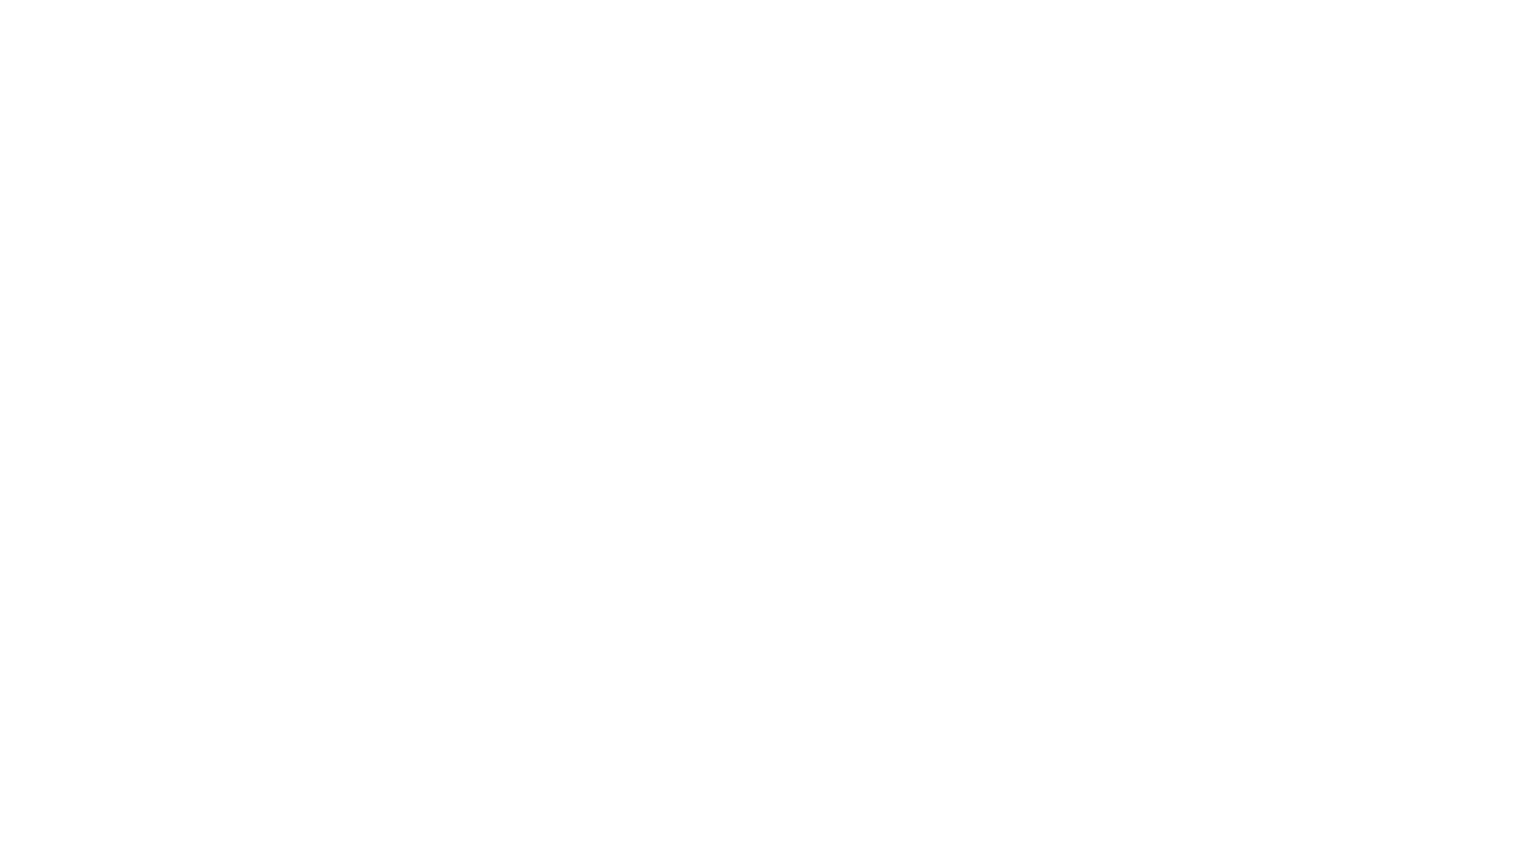 CIAT Logo